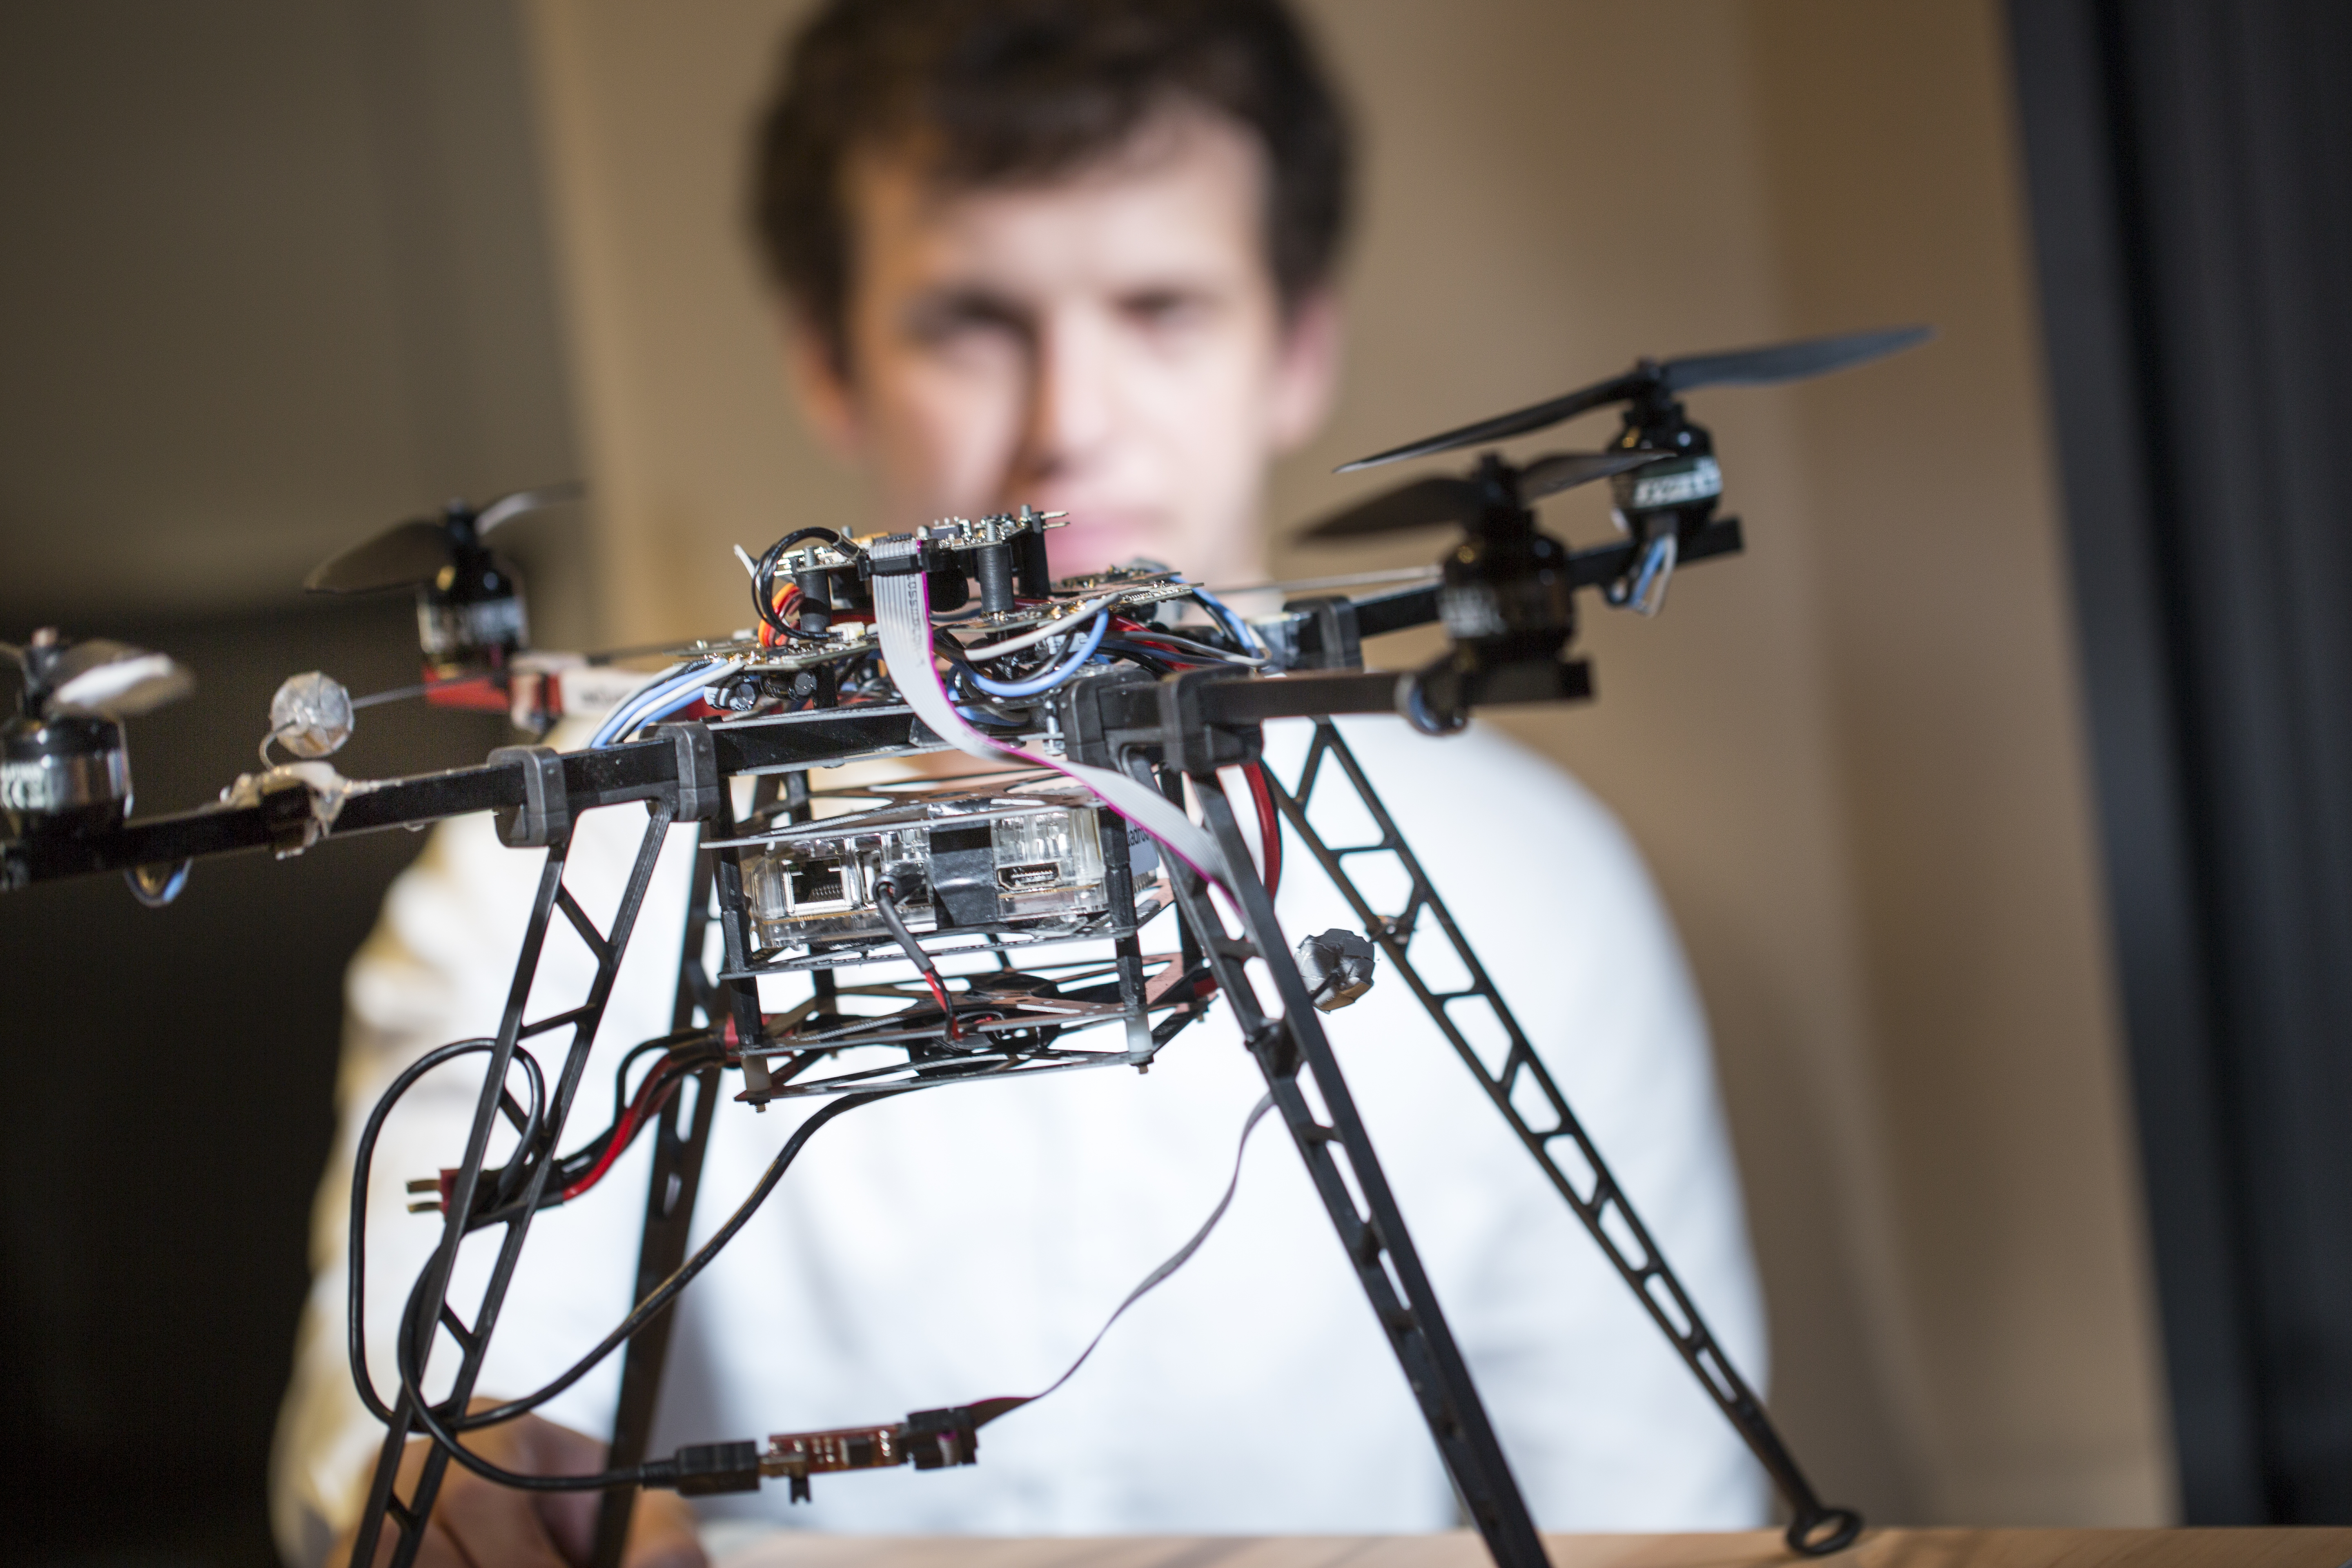 Le drone Mikrokopter a été acheté en kit, sous forme de pièces détachées : l’équipe peut donc le paramétrer en fonction des besoins. Ici, c’est un quadrotor (quatre hélices) ; il est possible d’avoir jusqu’à huit hélices si nécessaire.